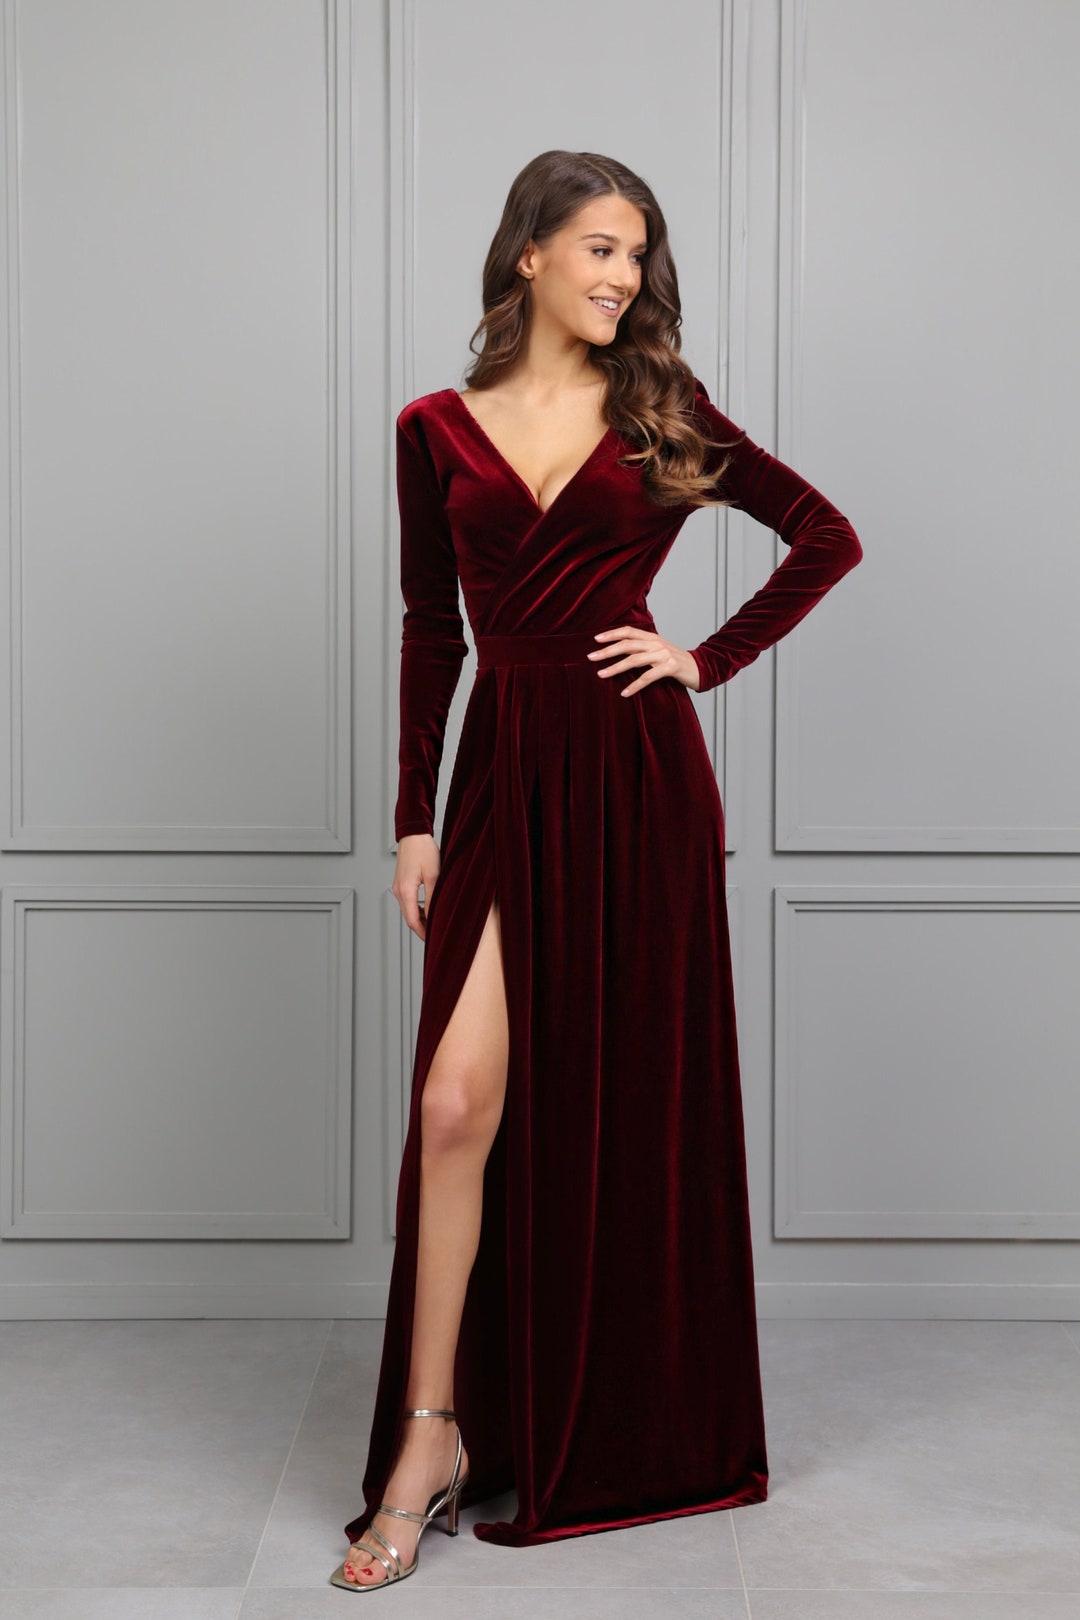 burgundi dress